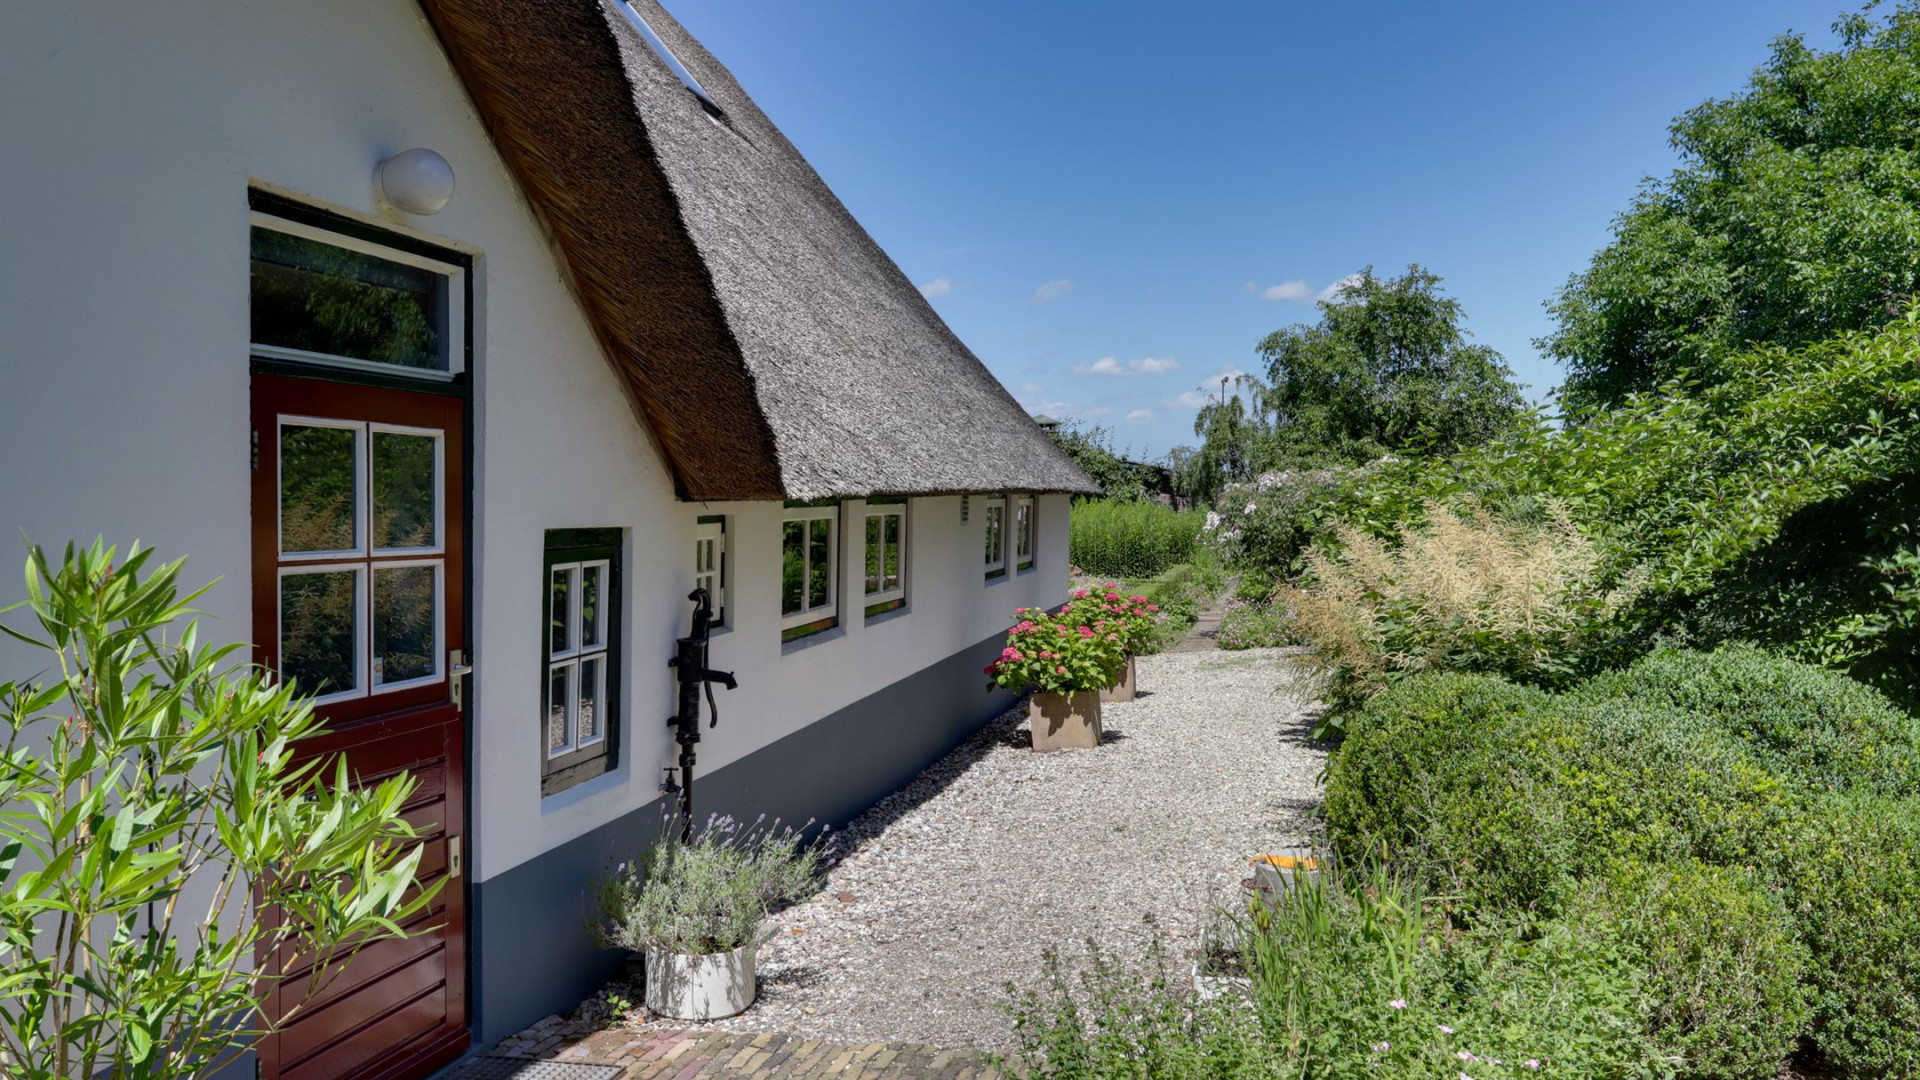 Ivo Niehe koopt deze prachtige woonboerderij. Zie foto's 30